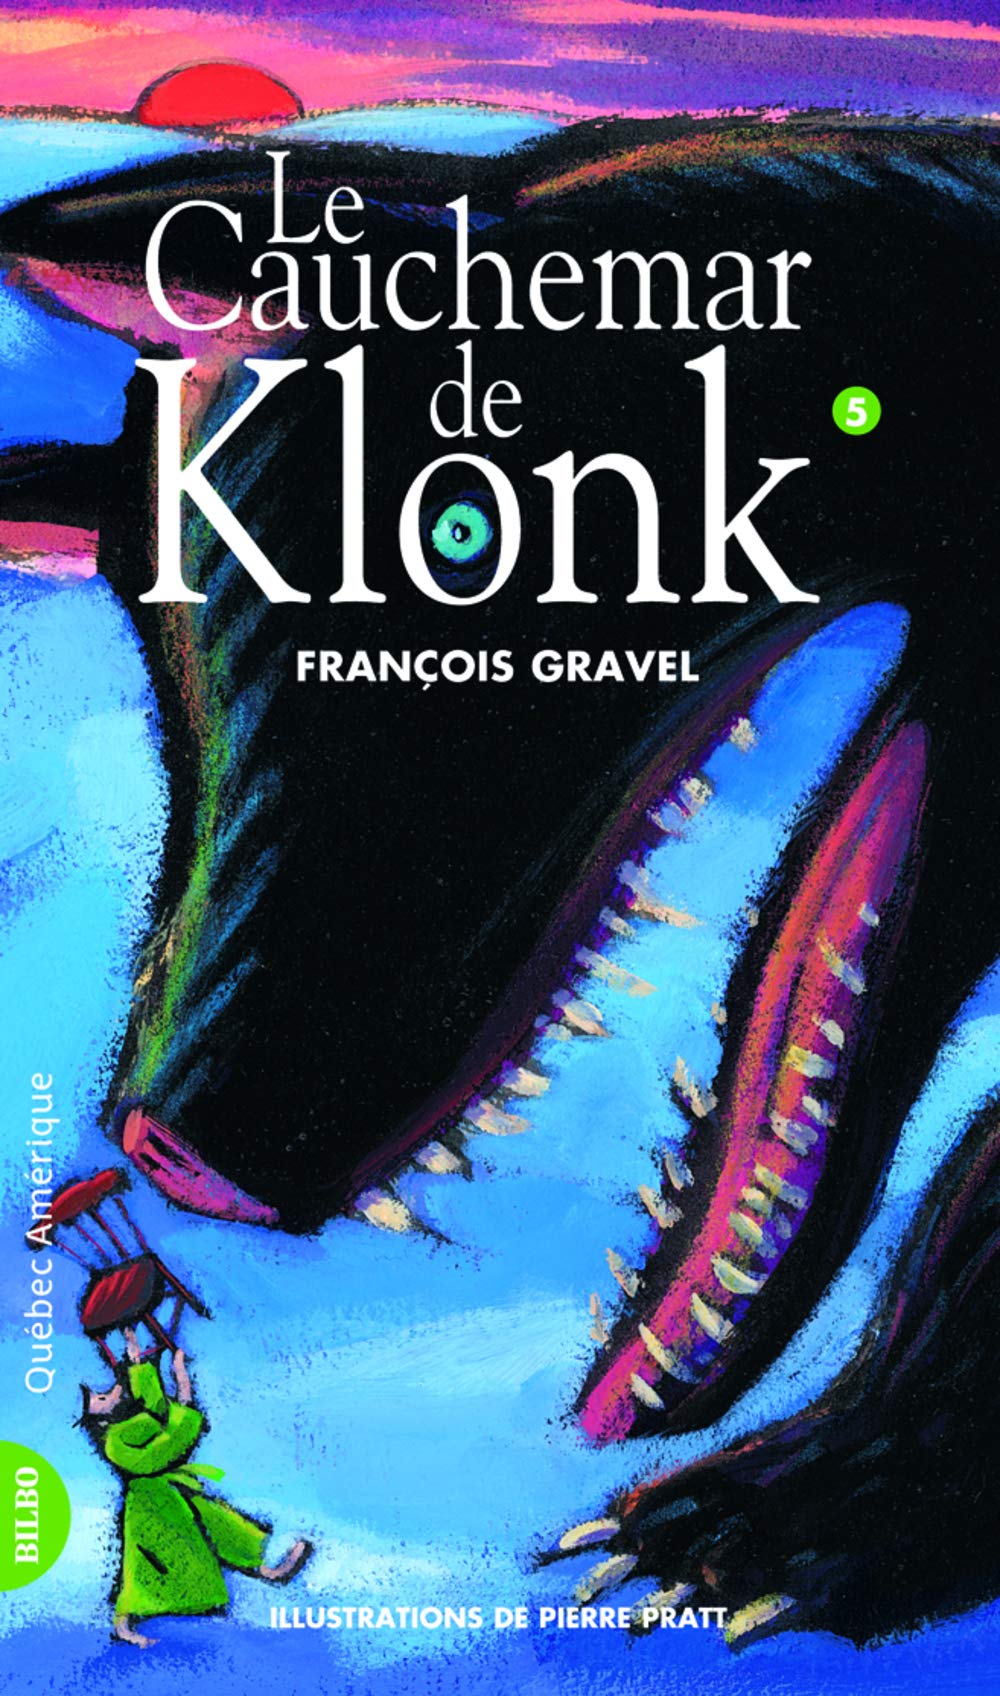 Klonk # 5 : Le cauchemar de Klonk - François Gravel